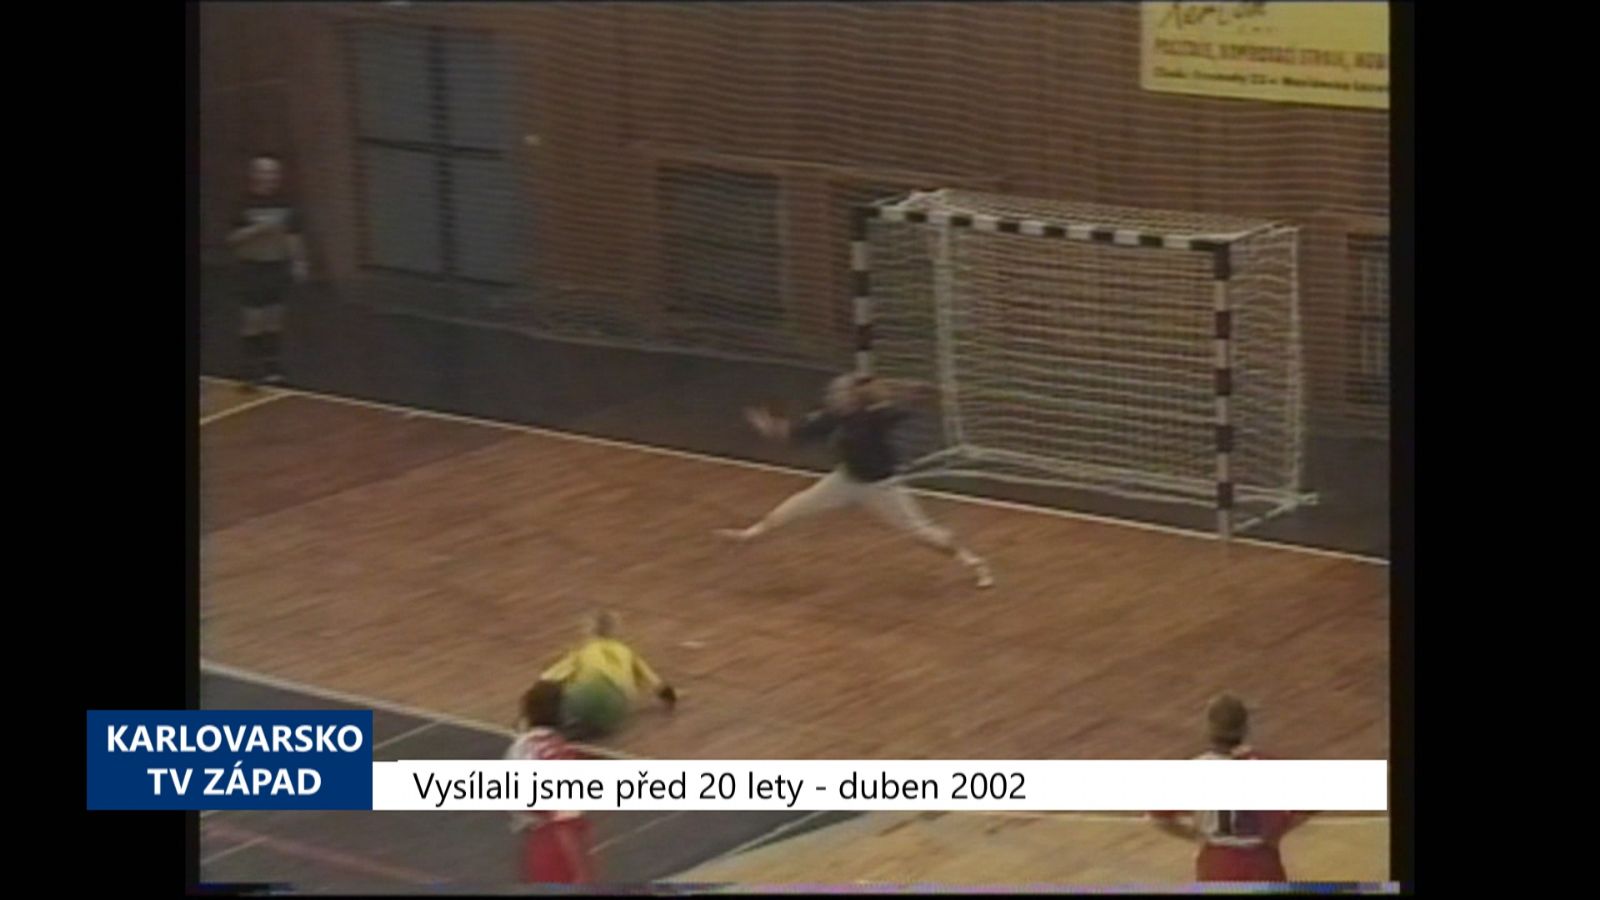 2002 – Cheb: Slávistky nedaly domácím házenkářkám šanci (TV Západ)